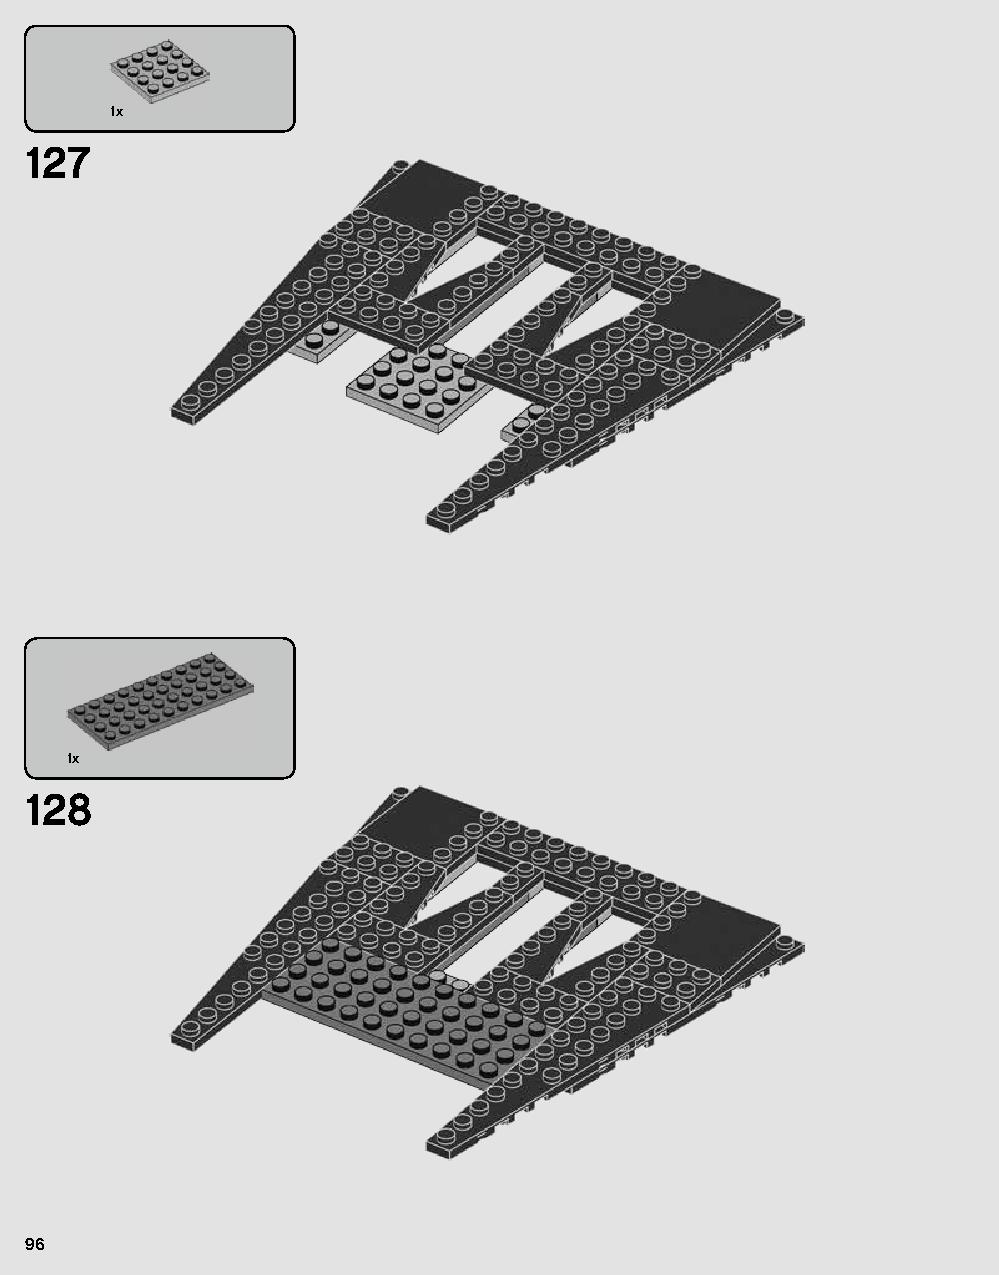 ダース・ベイダーの城 75251 レゴの商品情報 レゴの説明書・組立方法 96 page